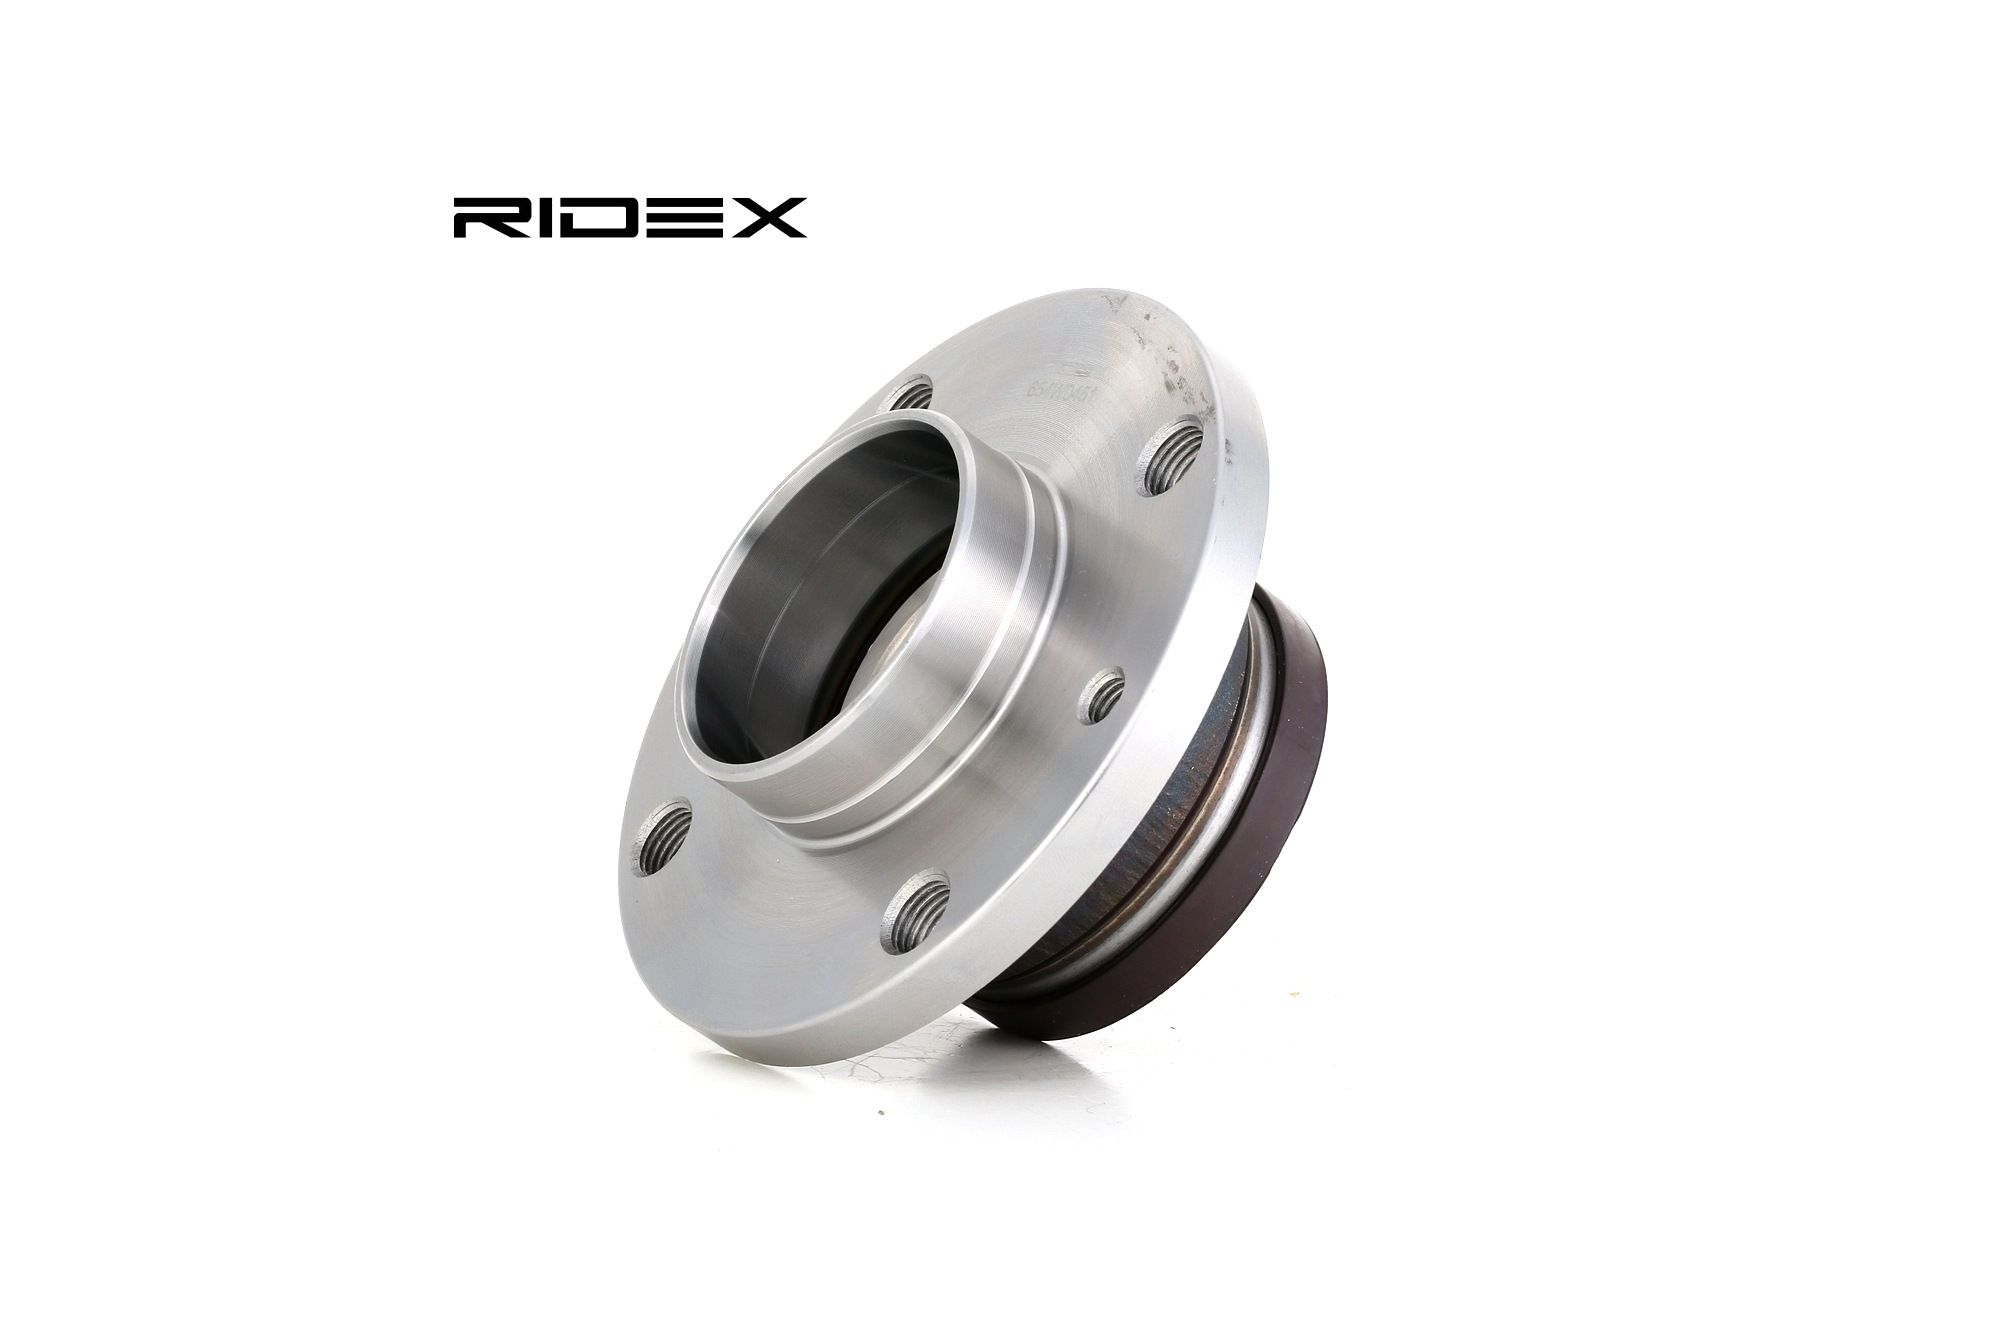 RIDEX 654W0451 original CHRYSLER Wheel bearing kit Rear Axle both sides, Wheel Bearing integrated into wheel hub